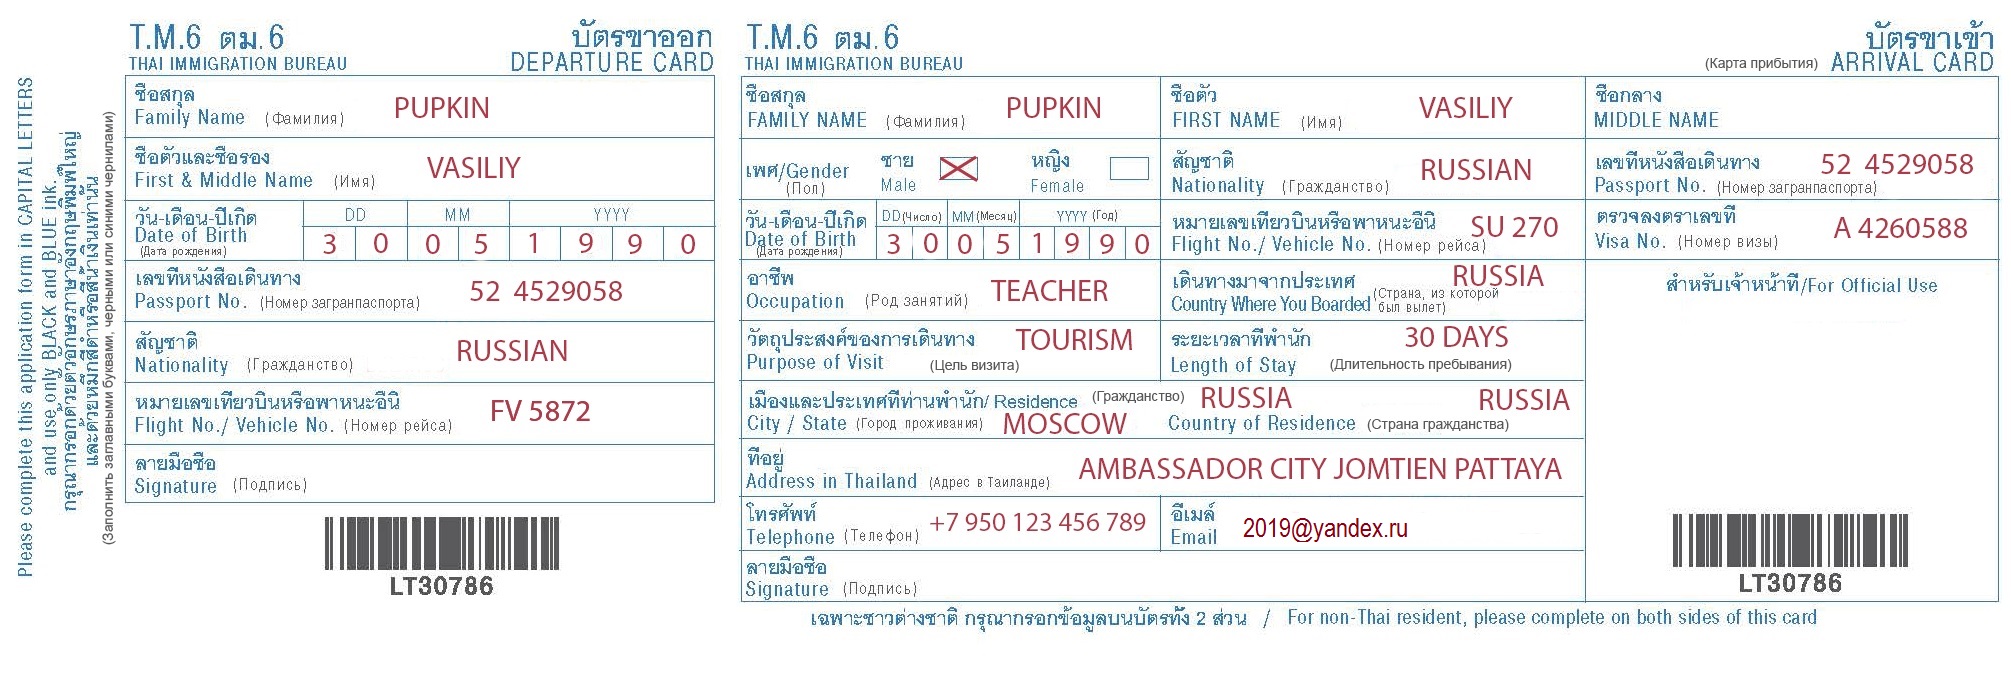 Декларация в Таиланде. Как заполнить иммиграционную карту при въезде в Таиланд